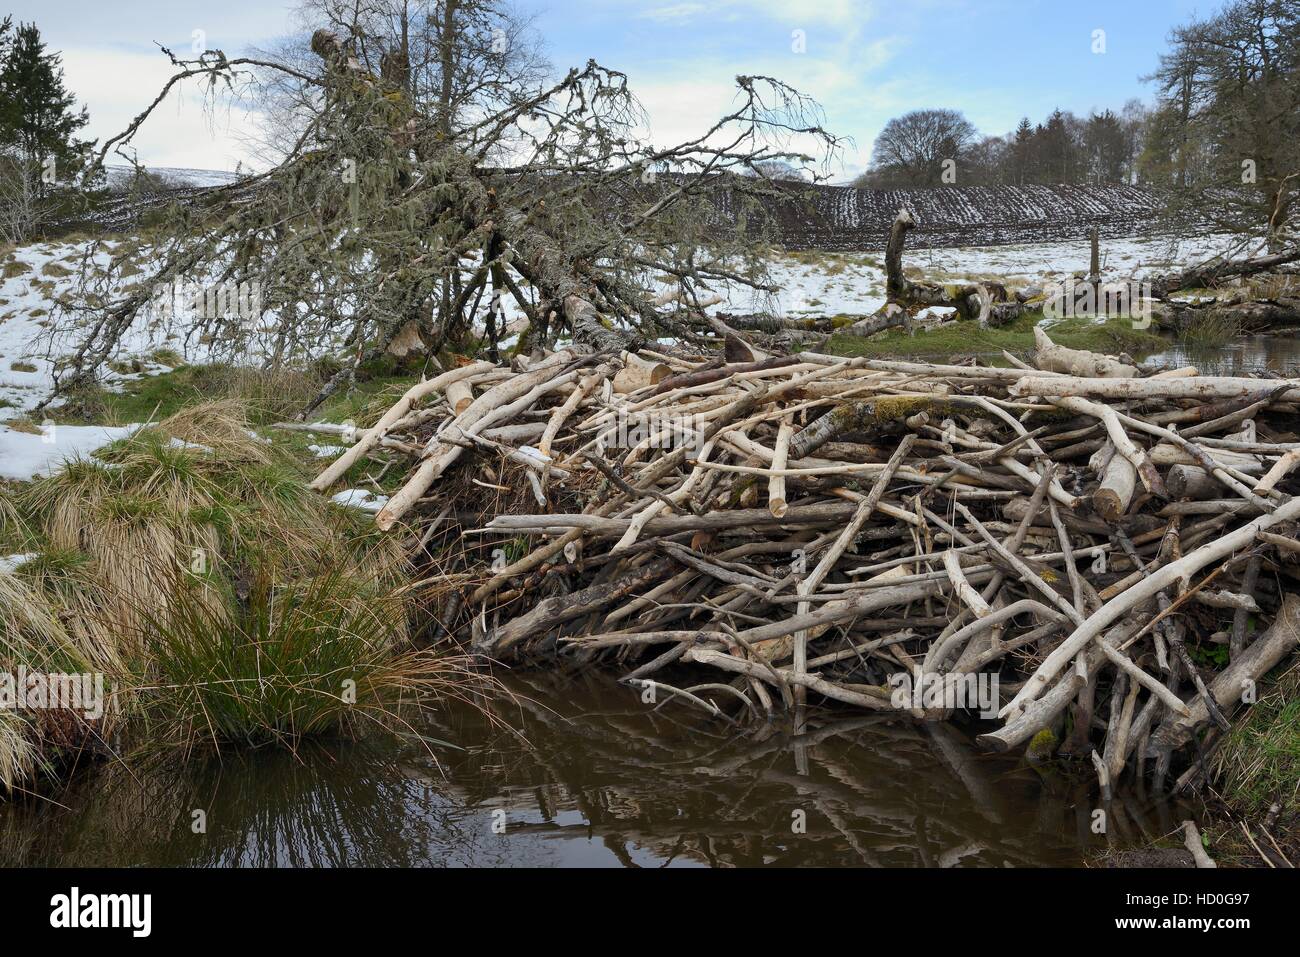 Barrage de flux avec des branches d'arbre par le castor d'Eurasie (Castor fiber) près de terres arables, Perthshire, Écosse, Royaume-Uni, Tayside. Banque D'Images